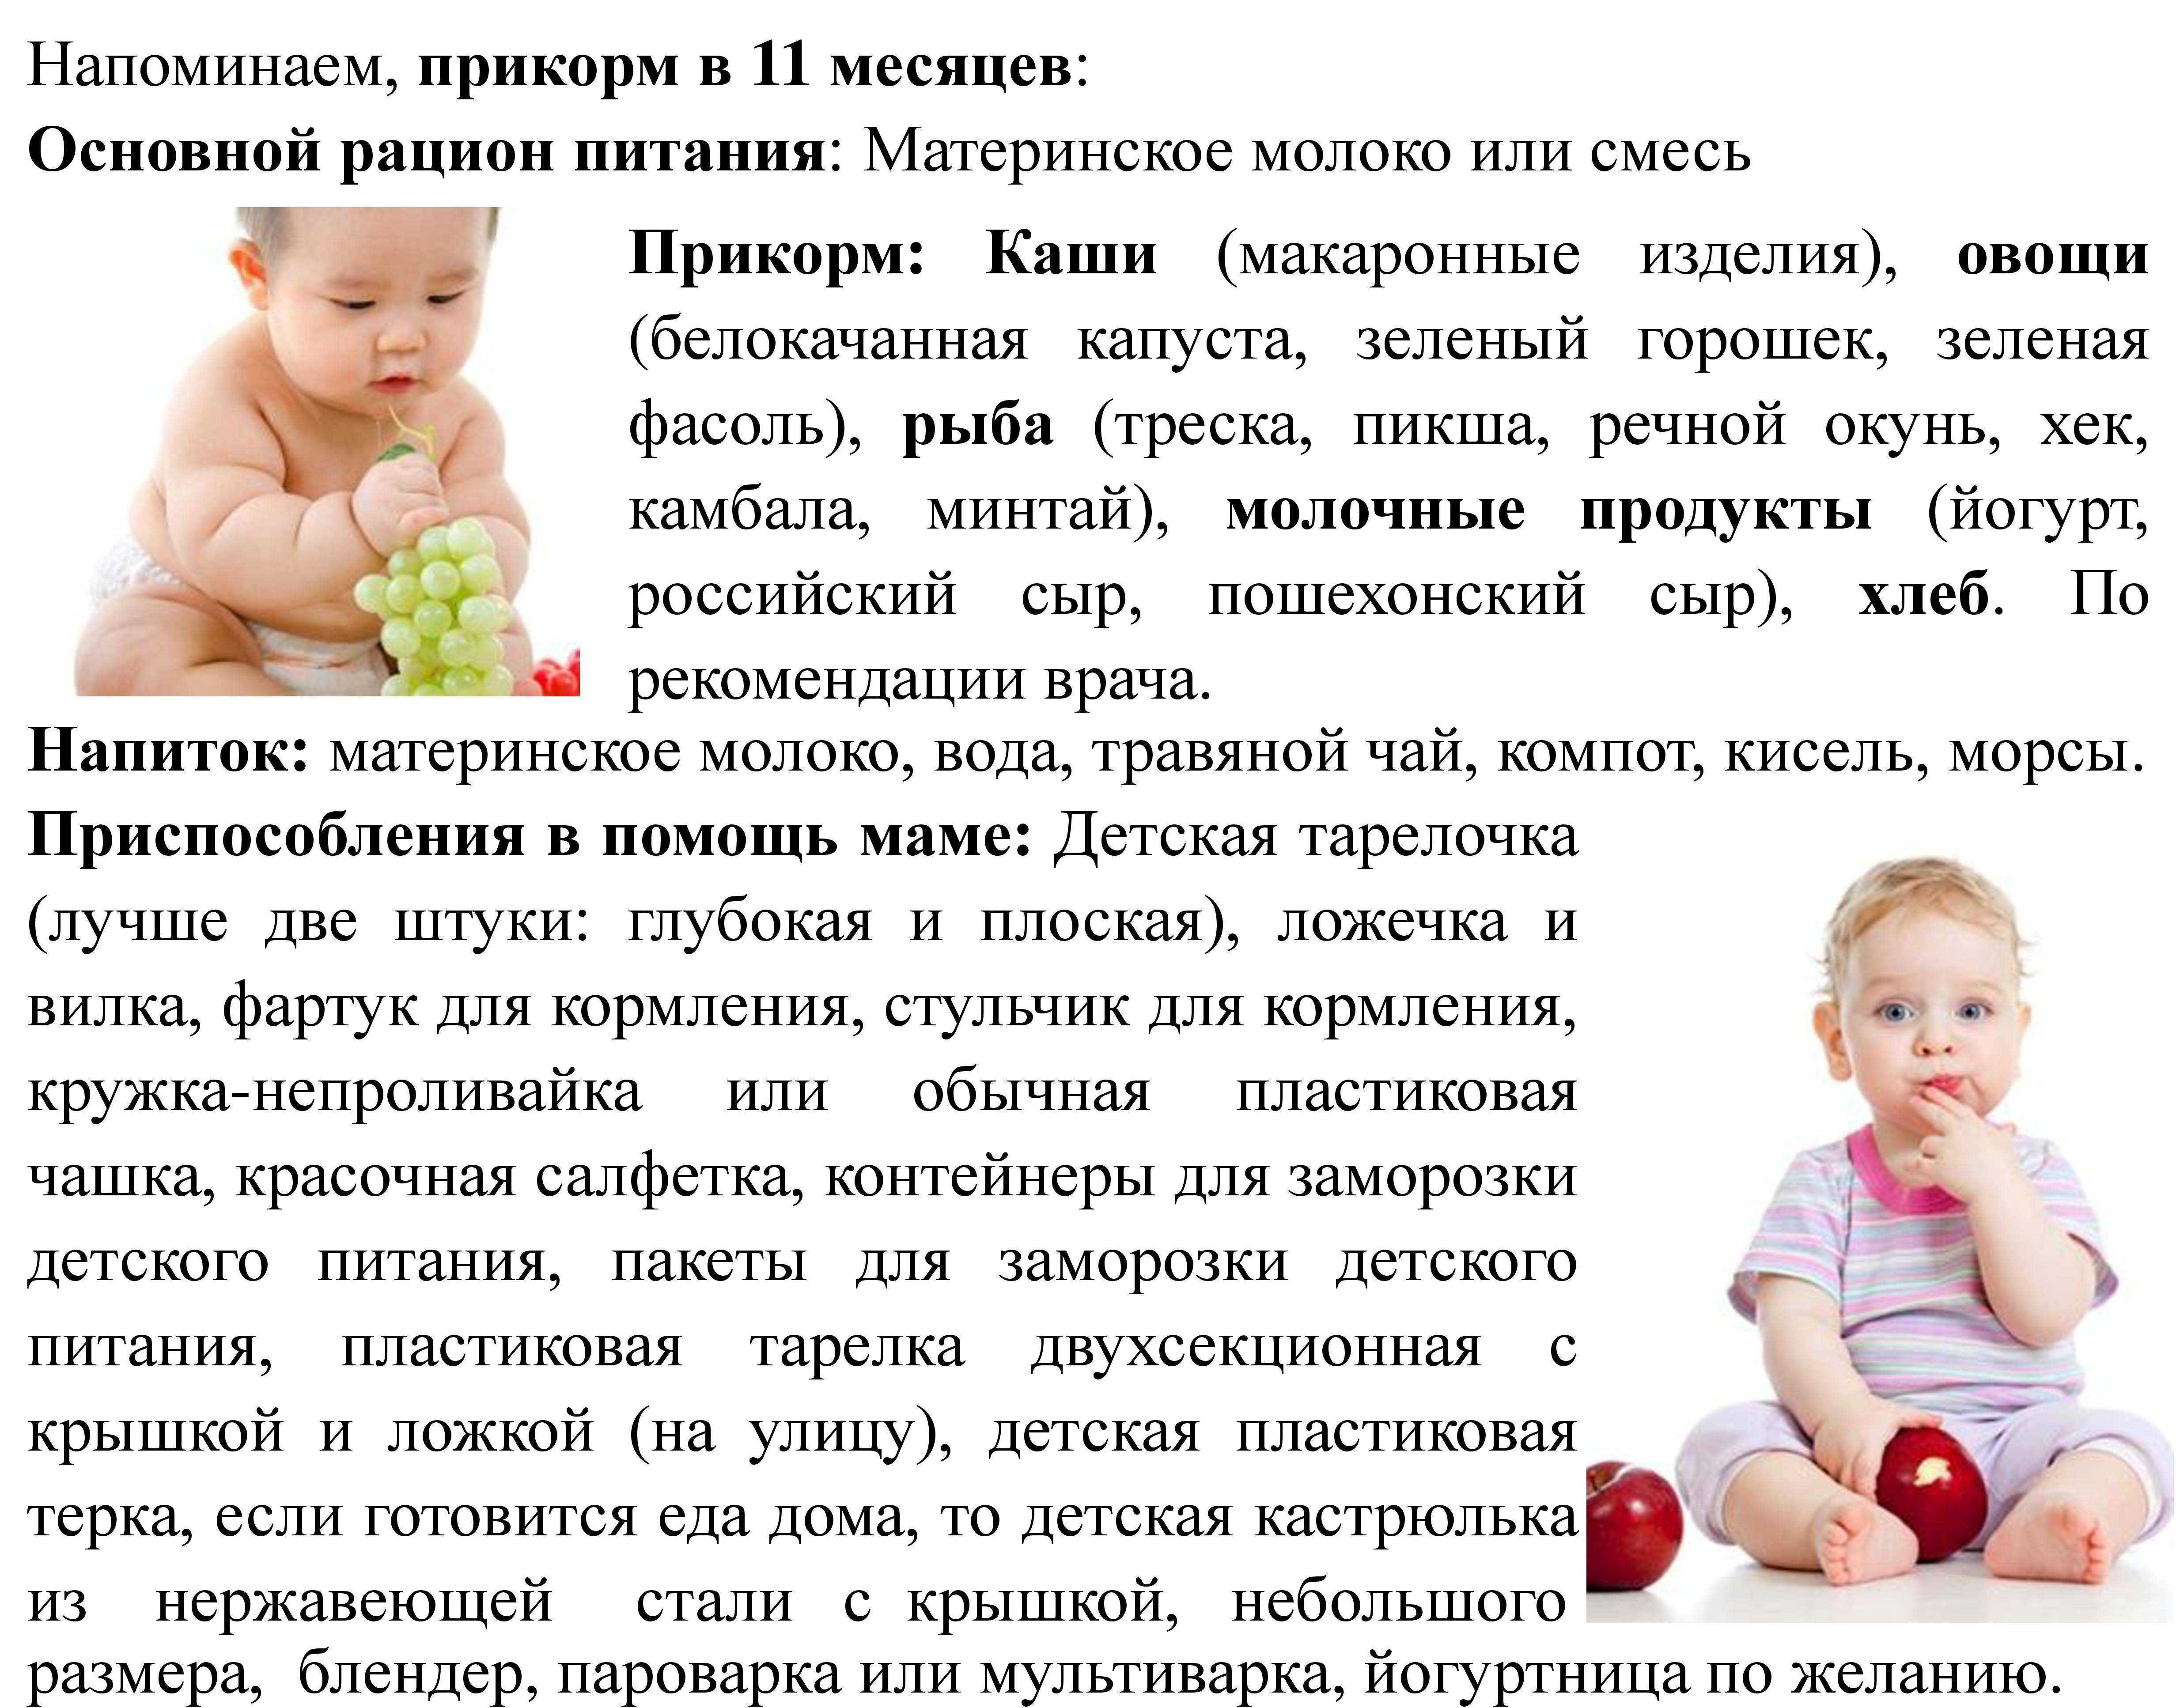 Меню ребенка в 8 месяцев: основа рациона и принципы питания